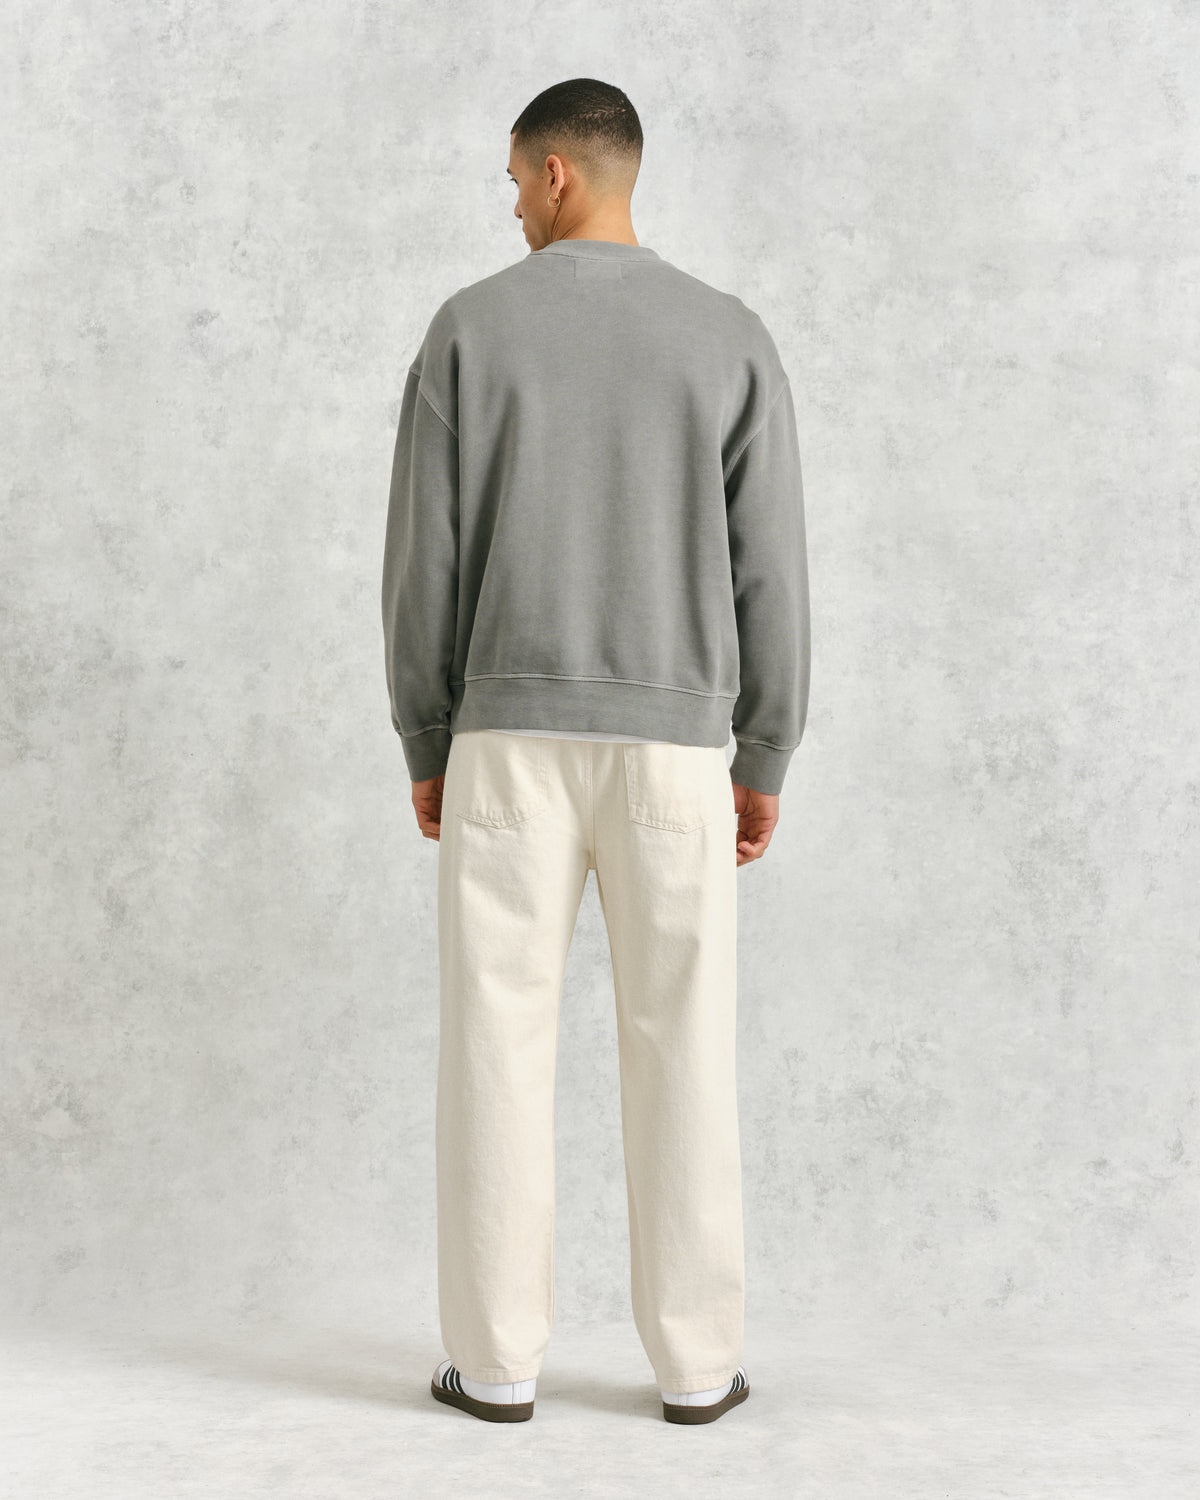 Zen Sweatshirt Grey Loopback Terry